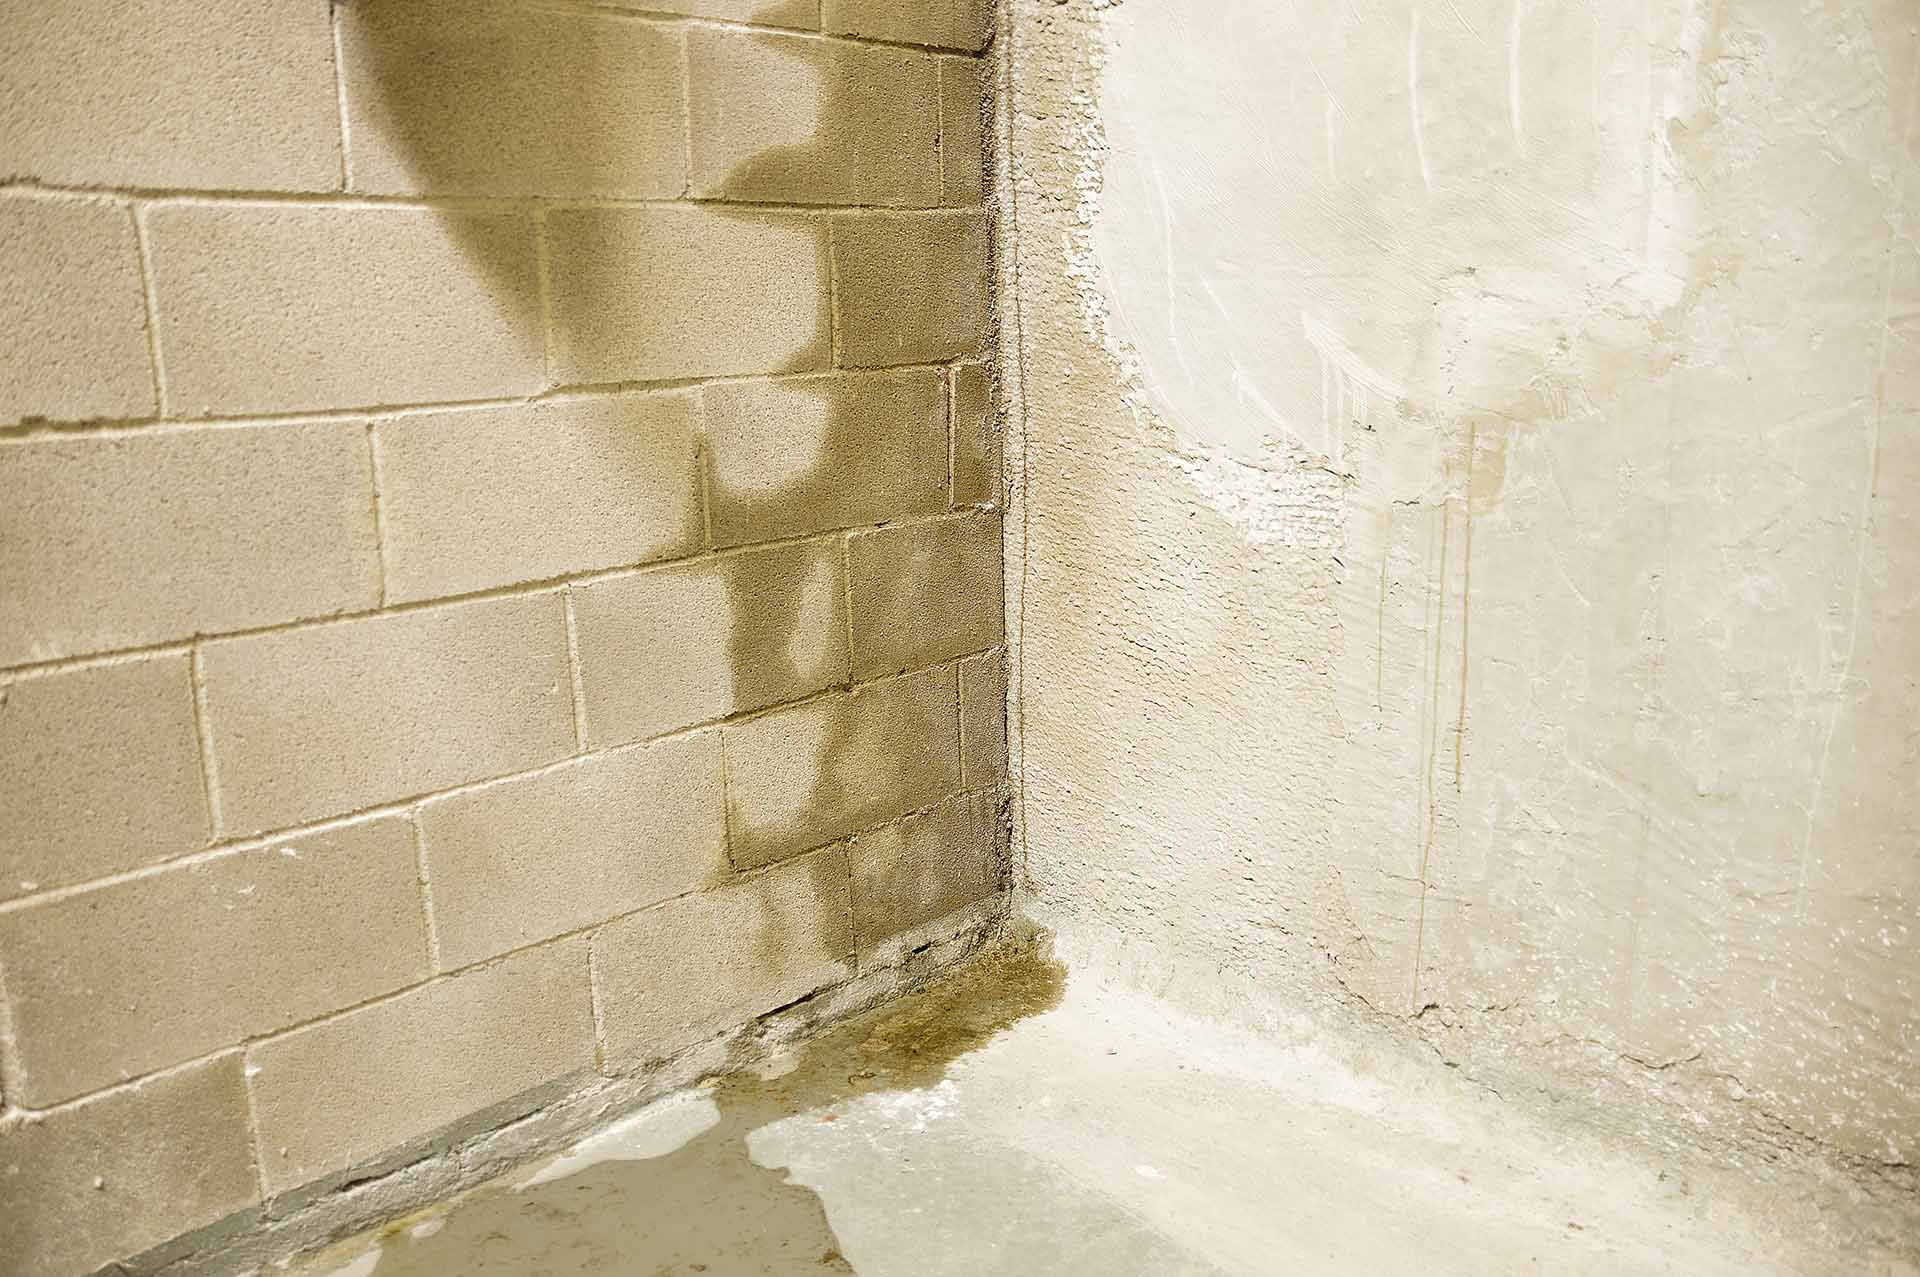 Wet basement wall